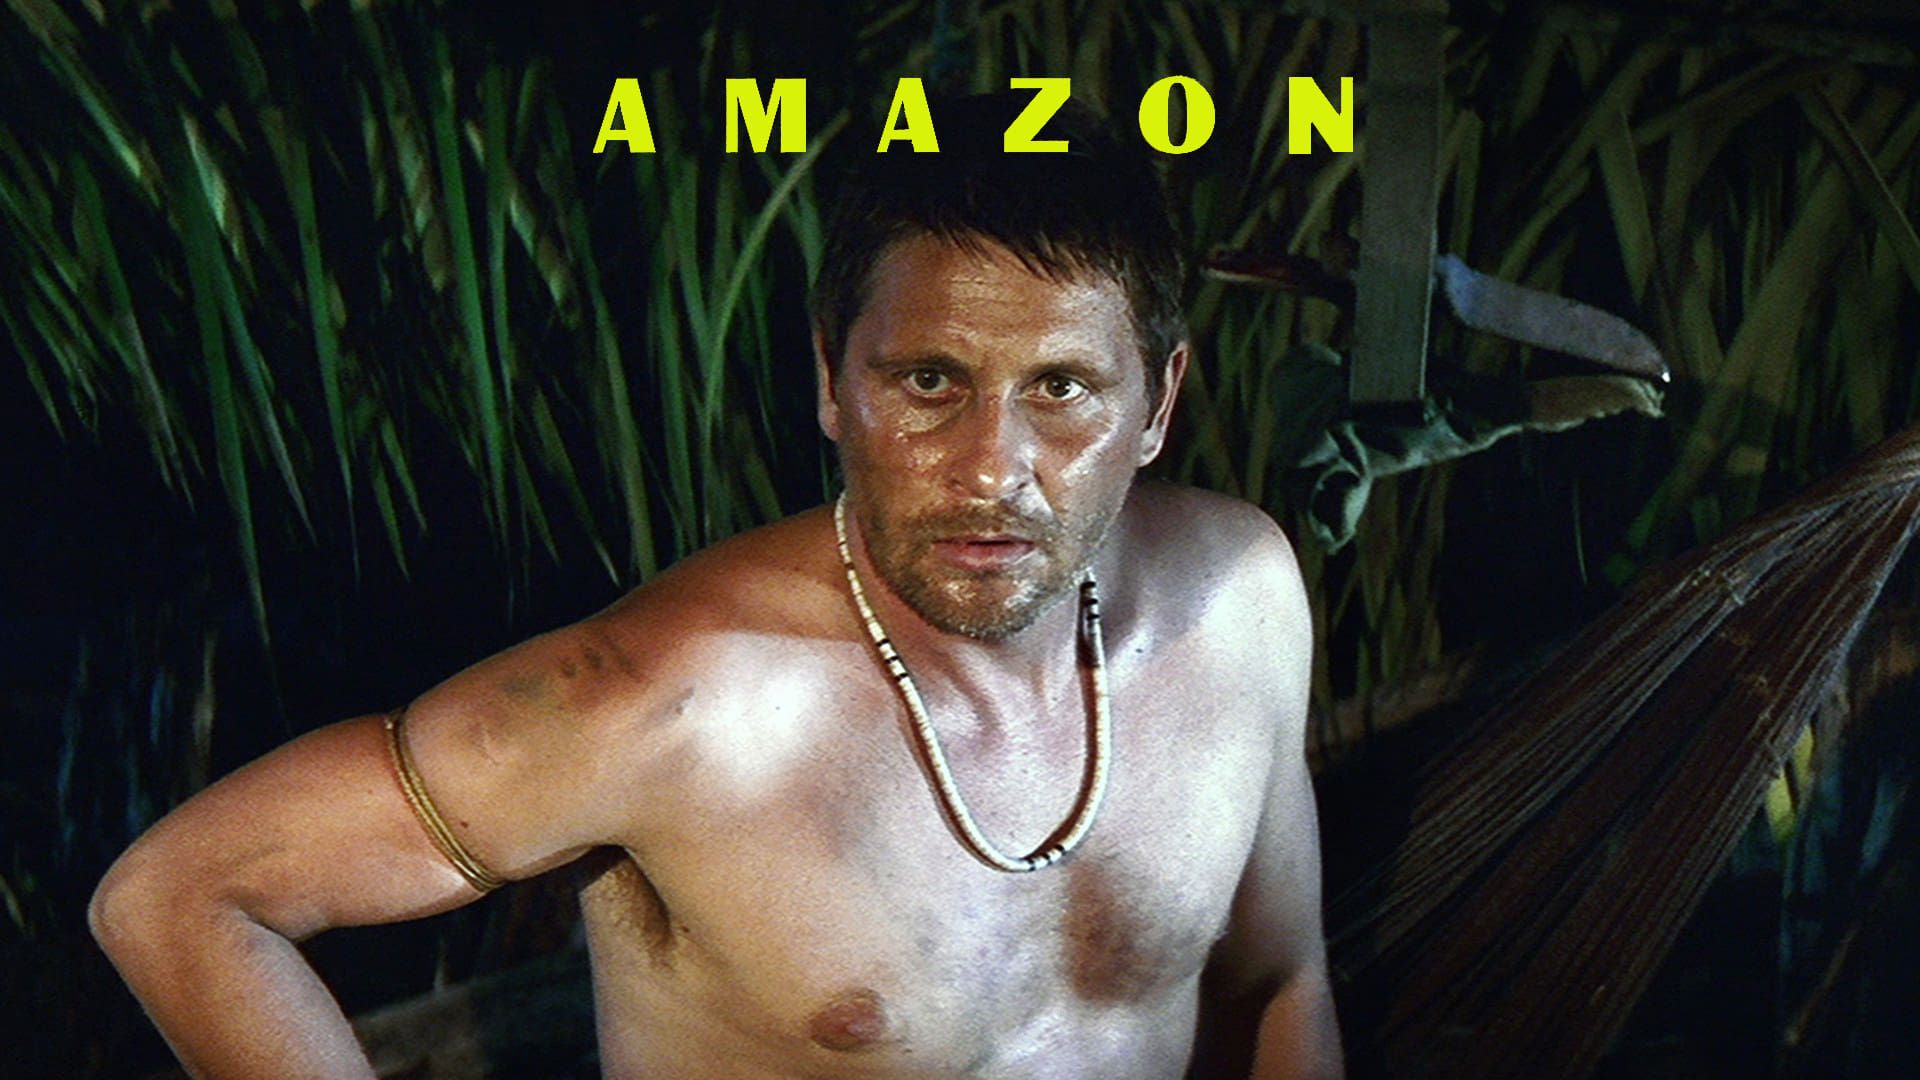 Amazon background